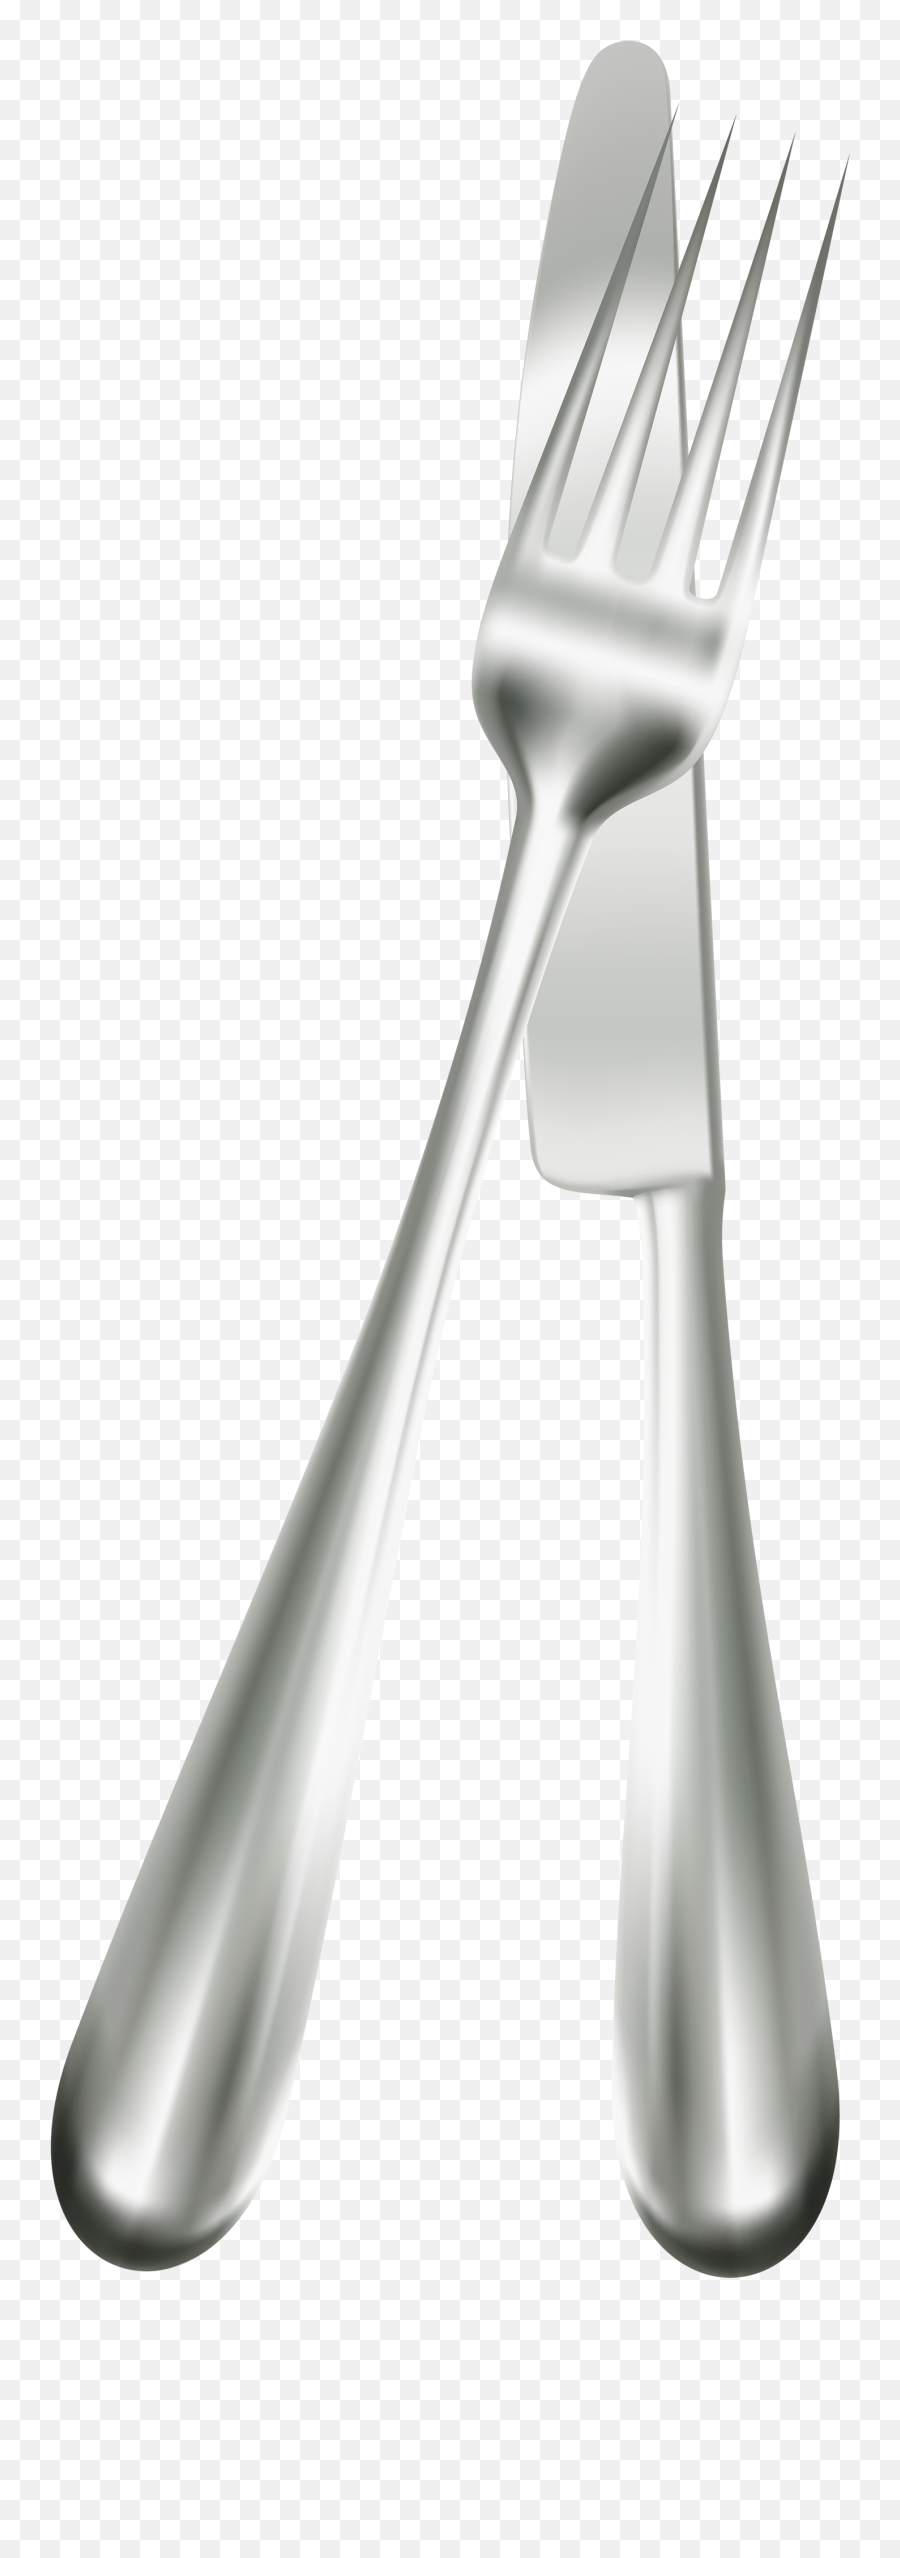 Silverware Fork Knife Transparent U0026 Png Clipart Free - Fork And Knife Png,Silverware Png